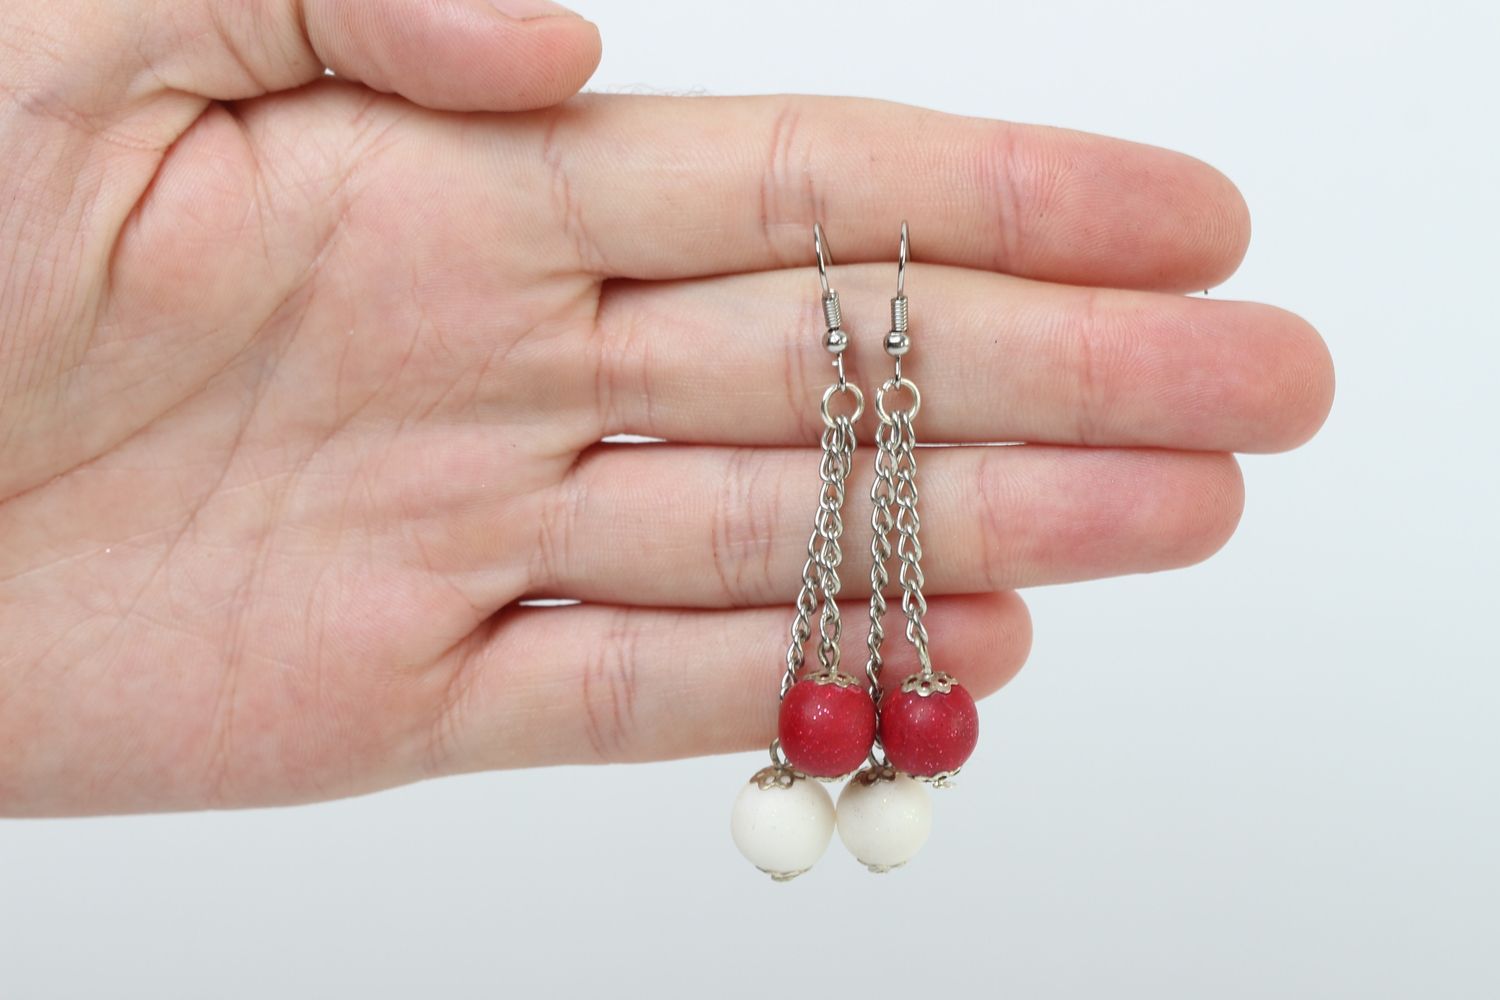 Handmade earrings unusual gift ideas clay earrings for women beautiful jewelry photo 4